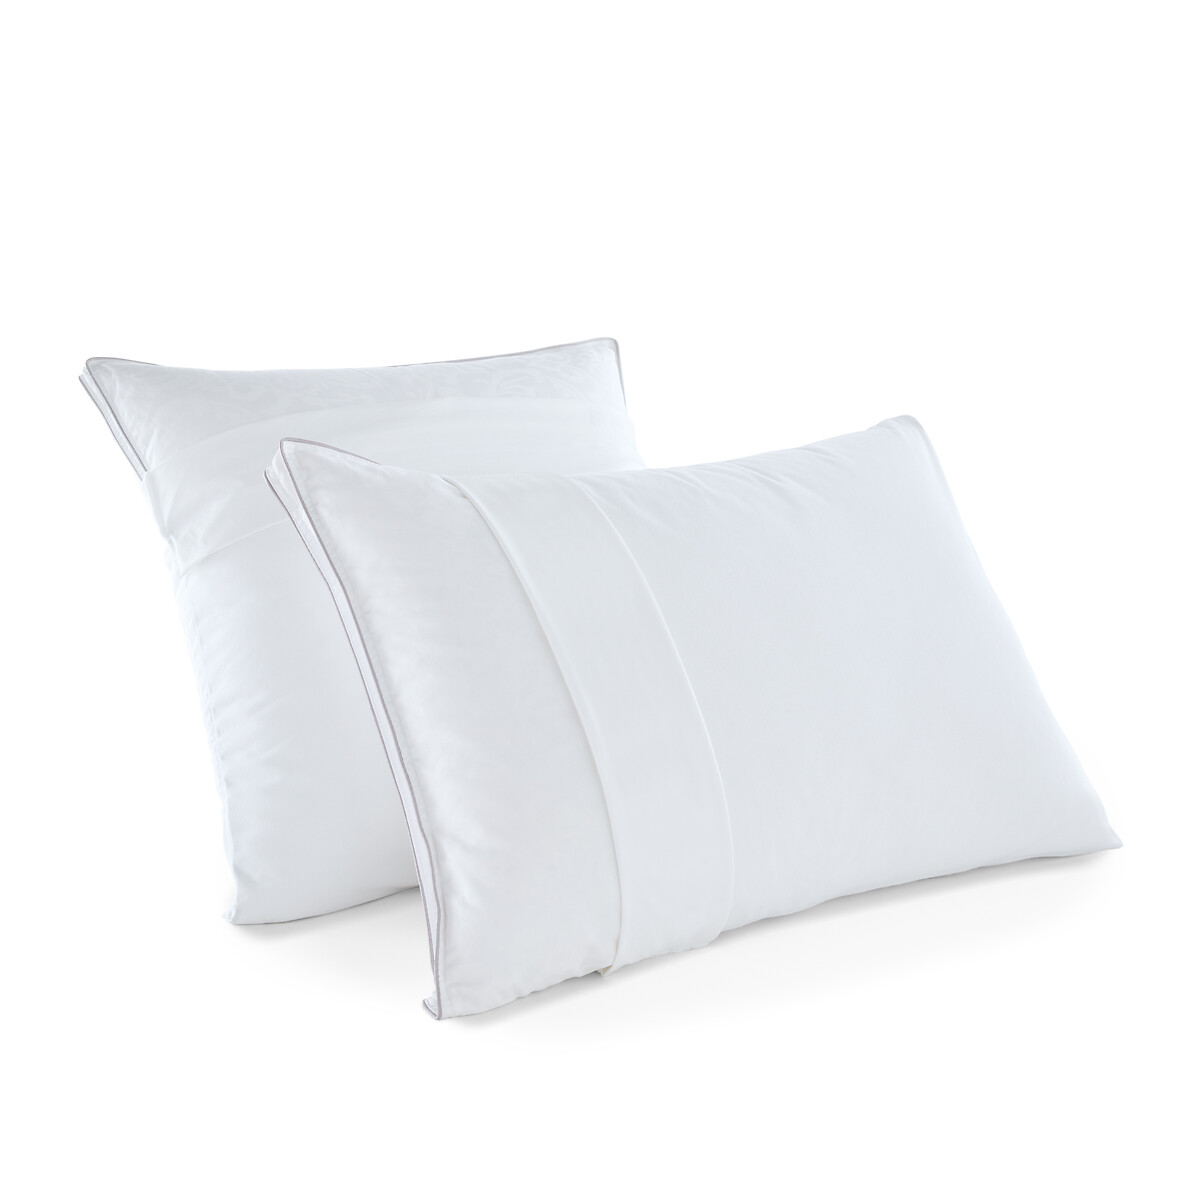 Нижний Чехол на подушку непромокаемый с обработкой от клещей 60 x 60 см белый